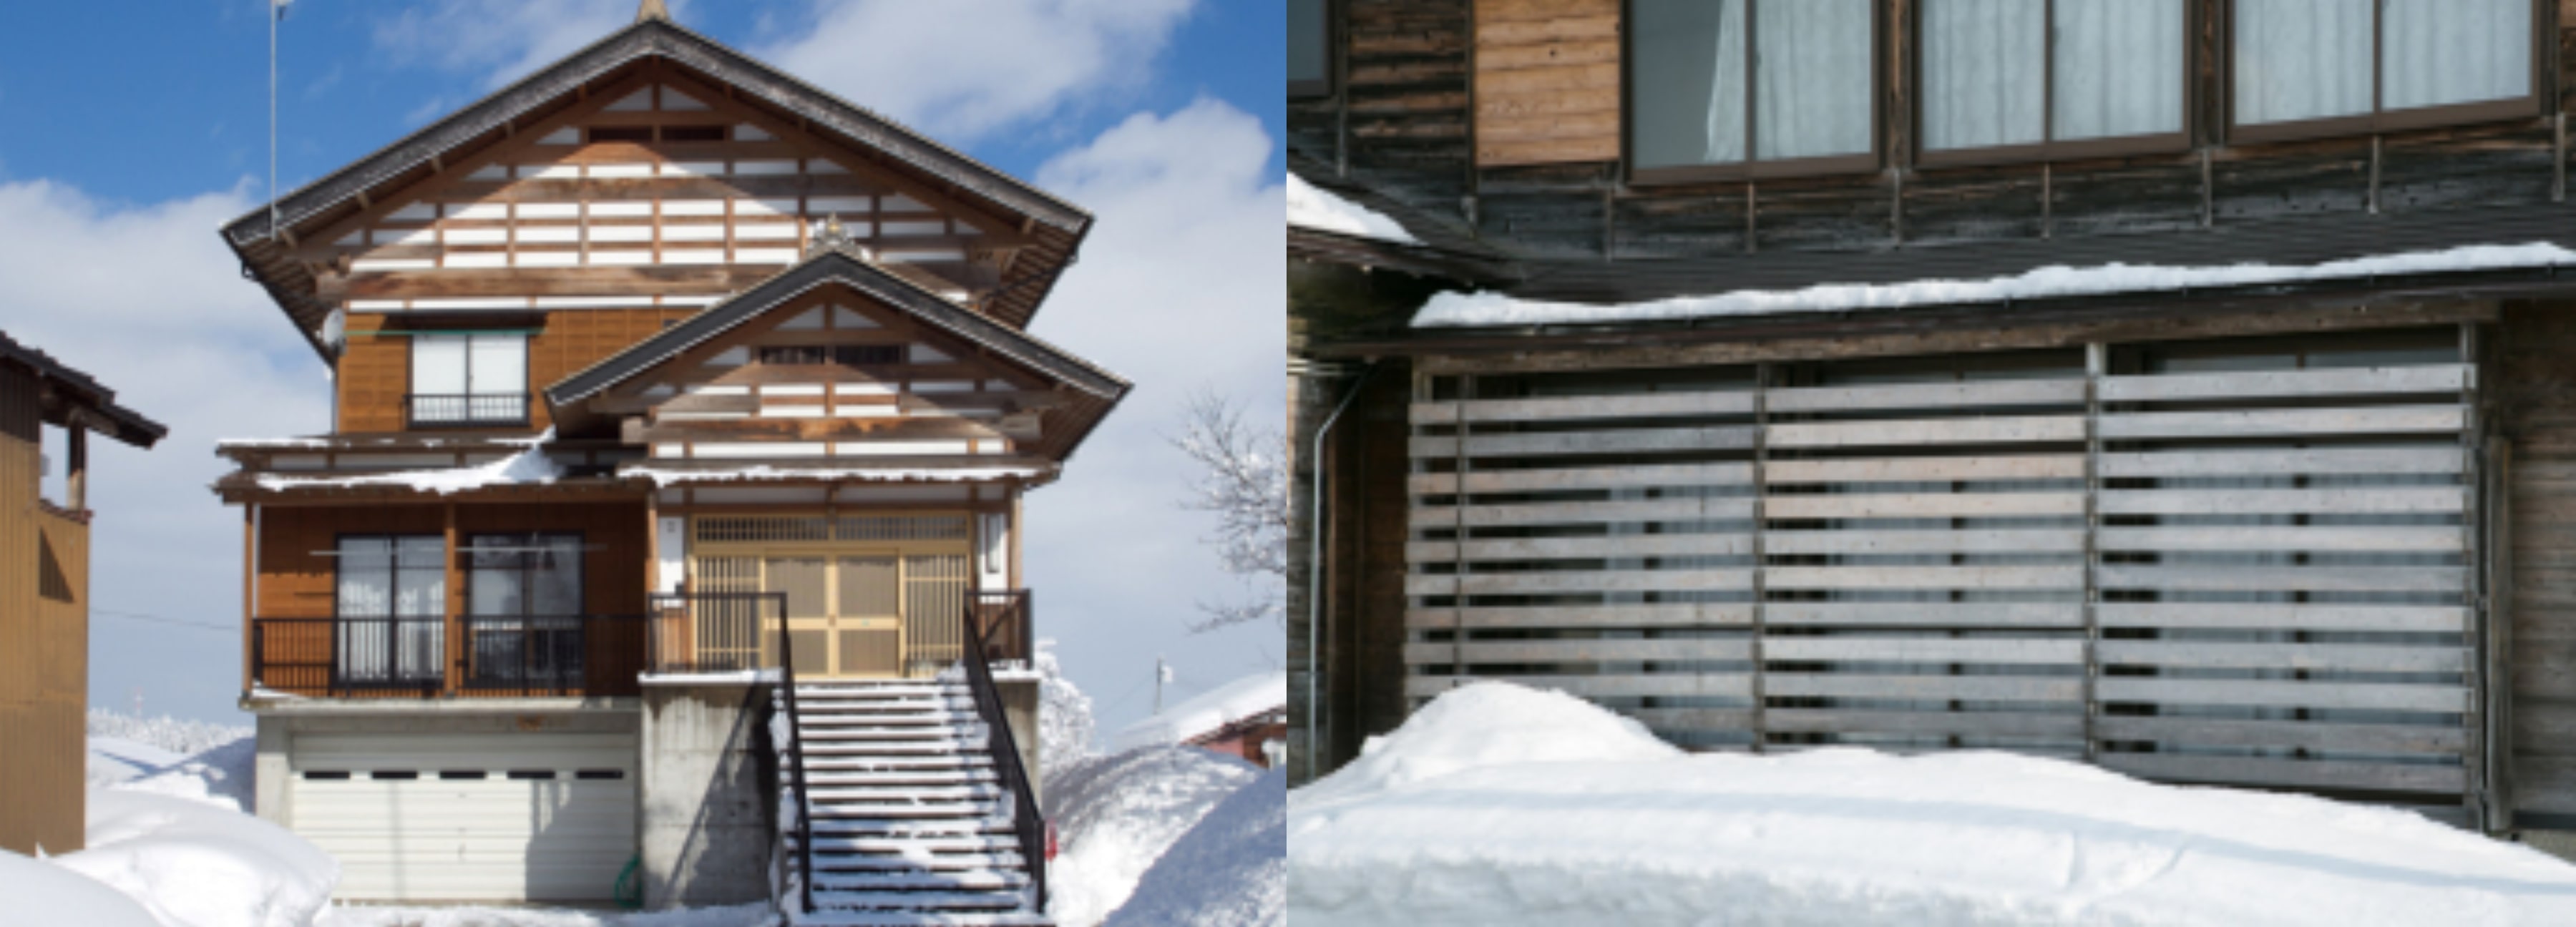 為防止雪坍陷而建造的建築物。(Image credit: Tōkamachi City)